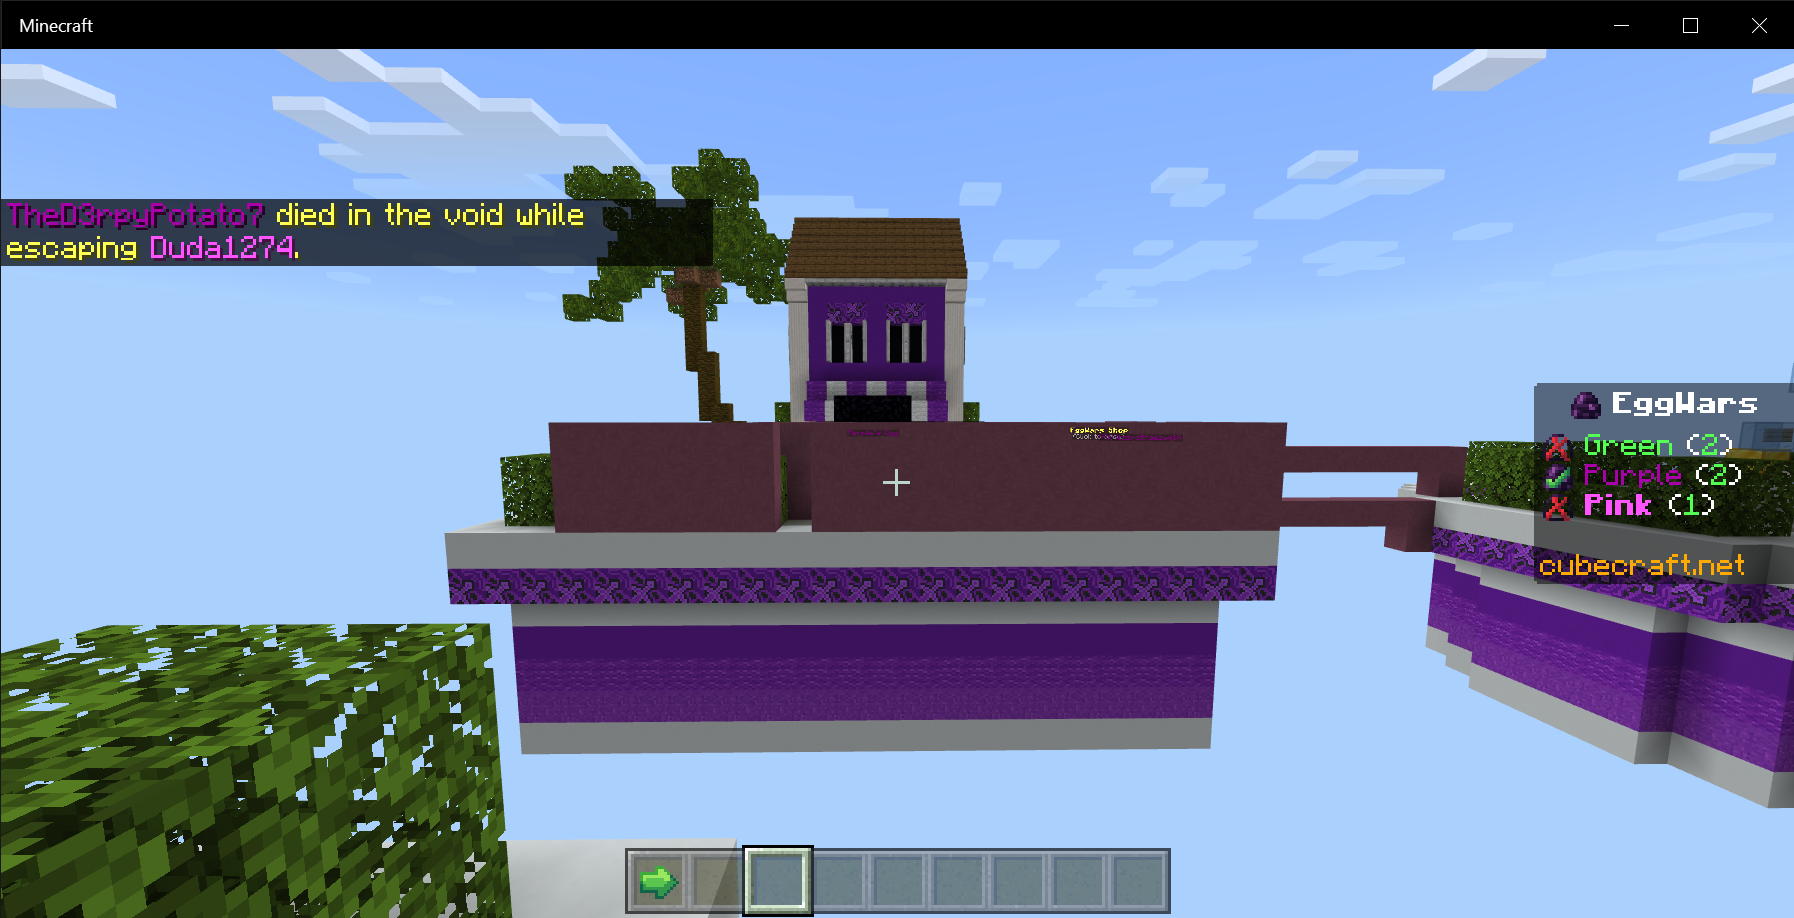 Purples build.png